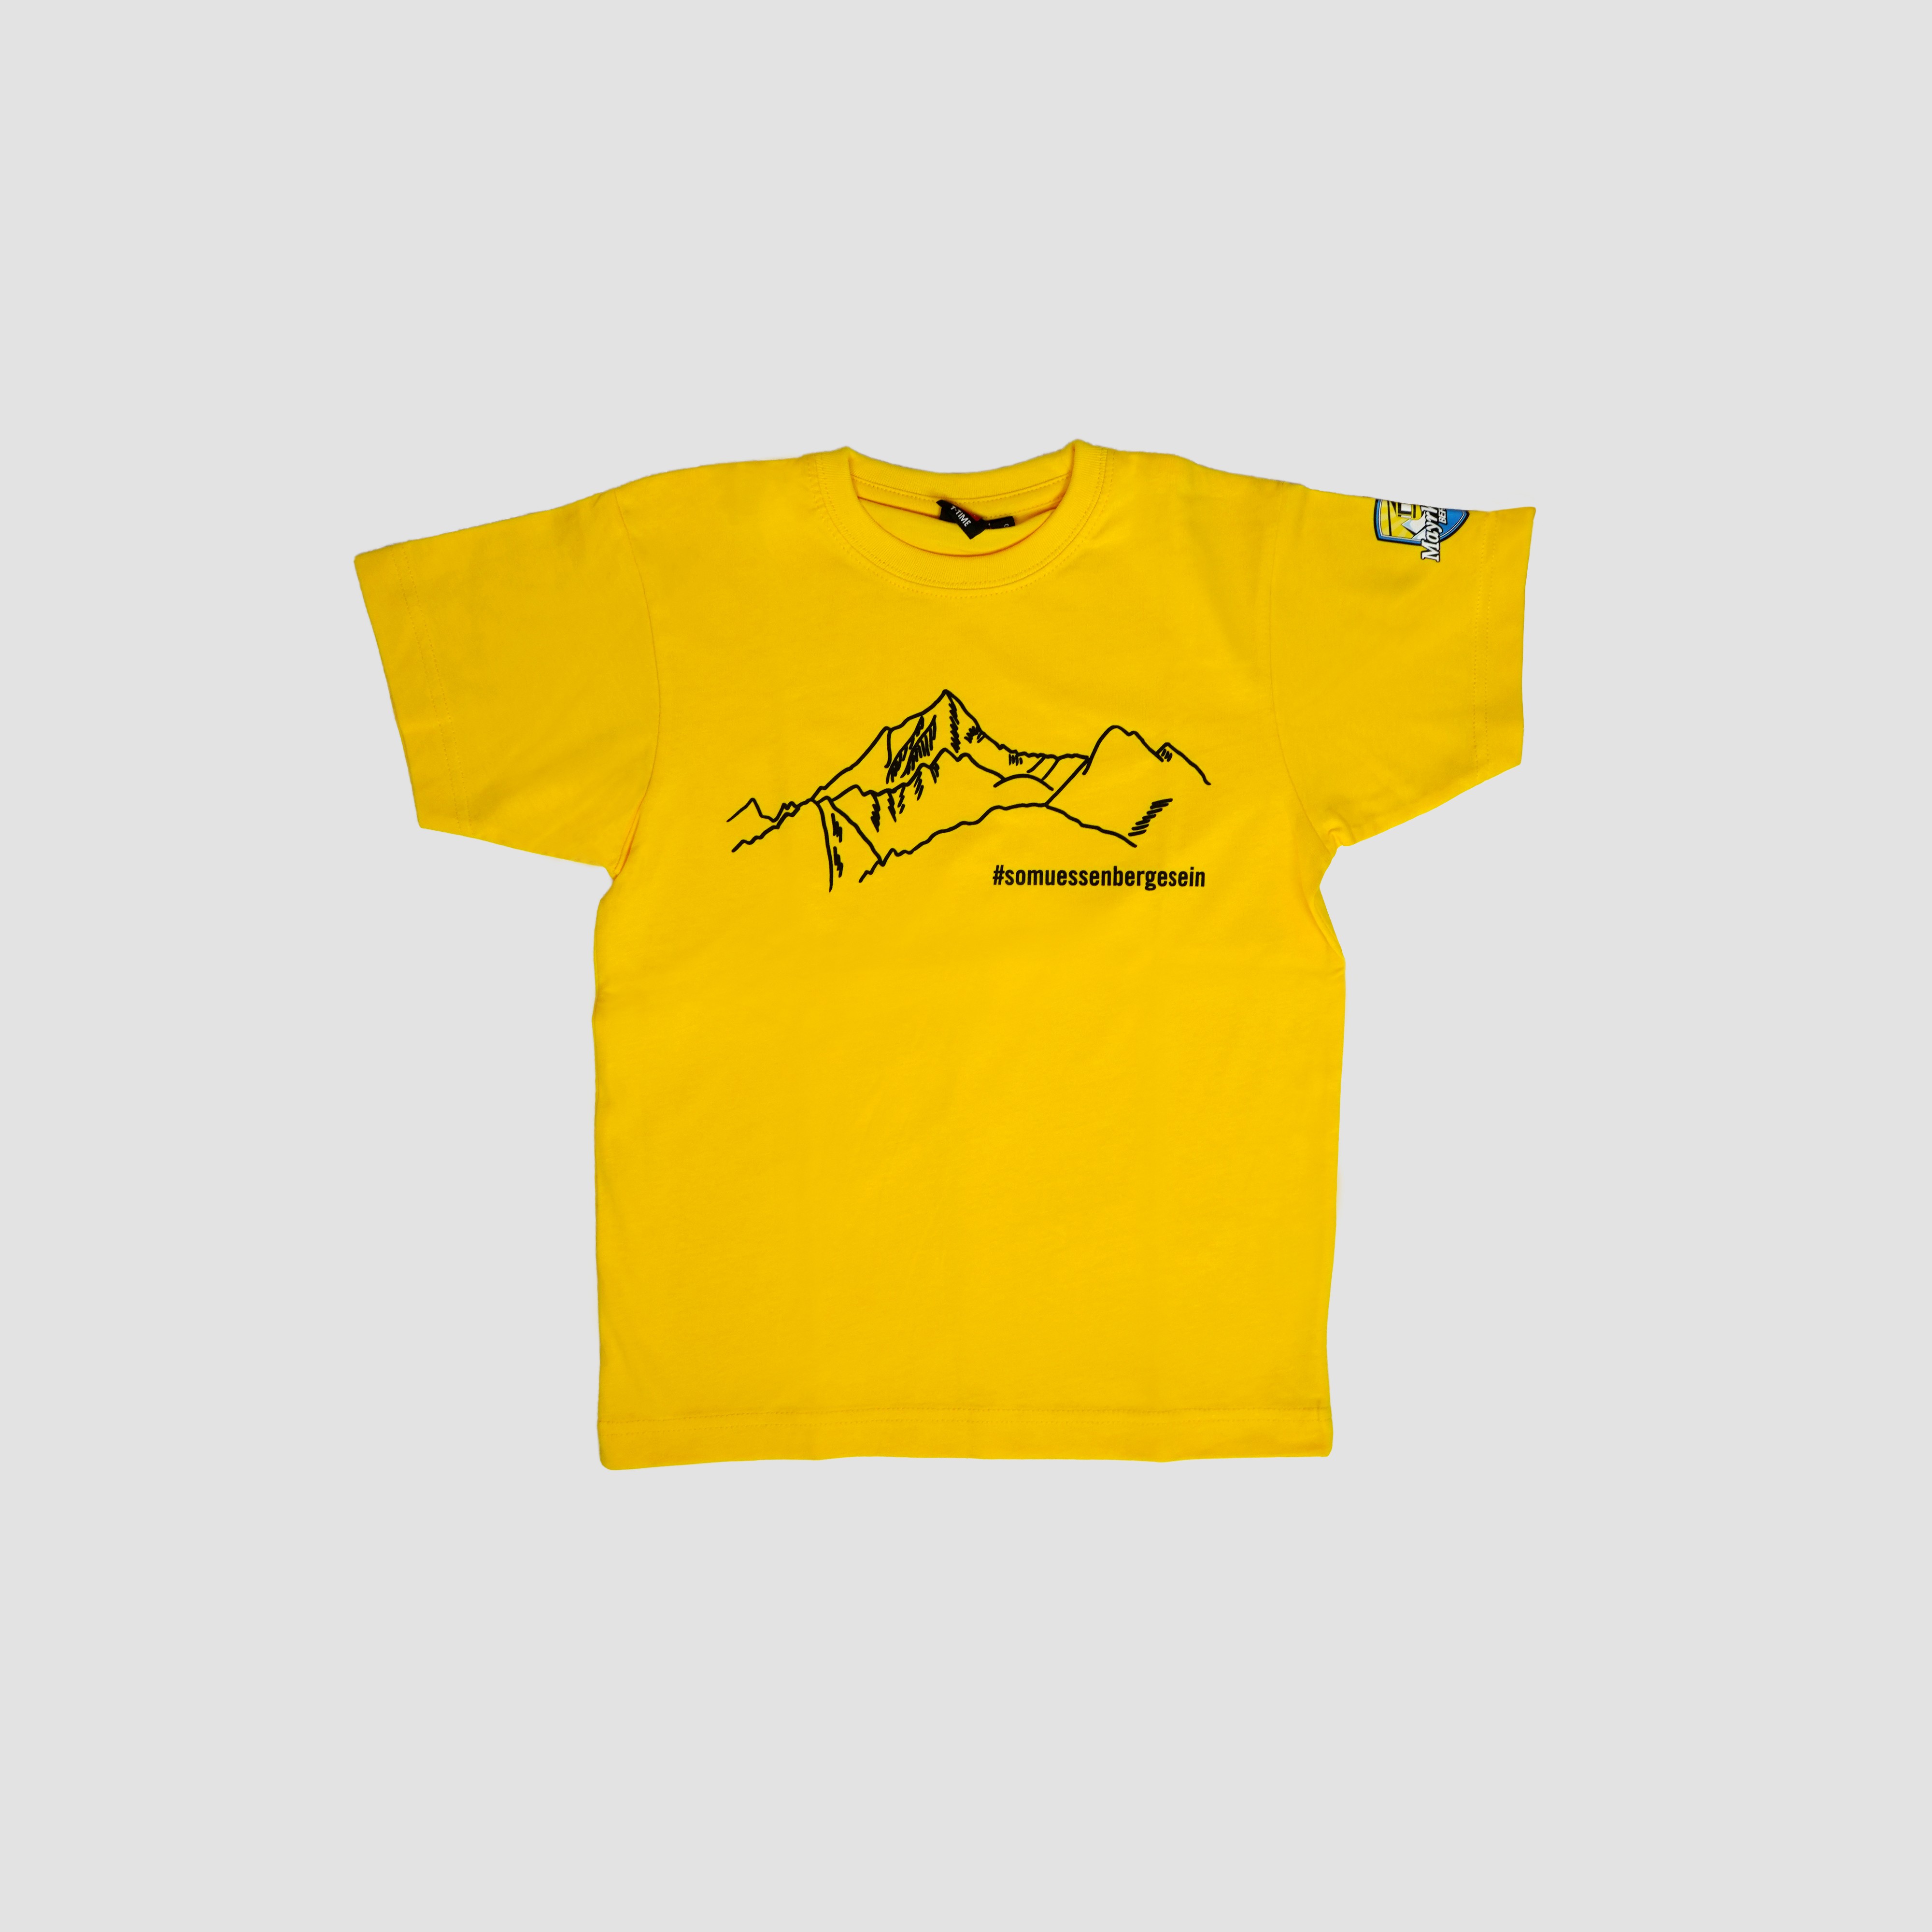 T-Shirt "So müssen Berge sein" Kinder gelb